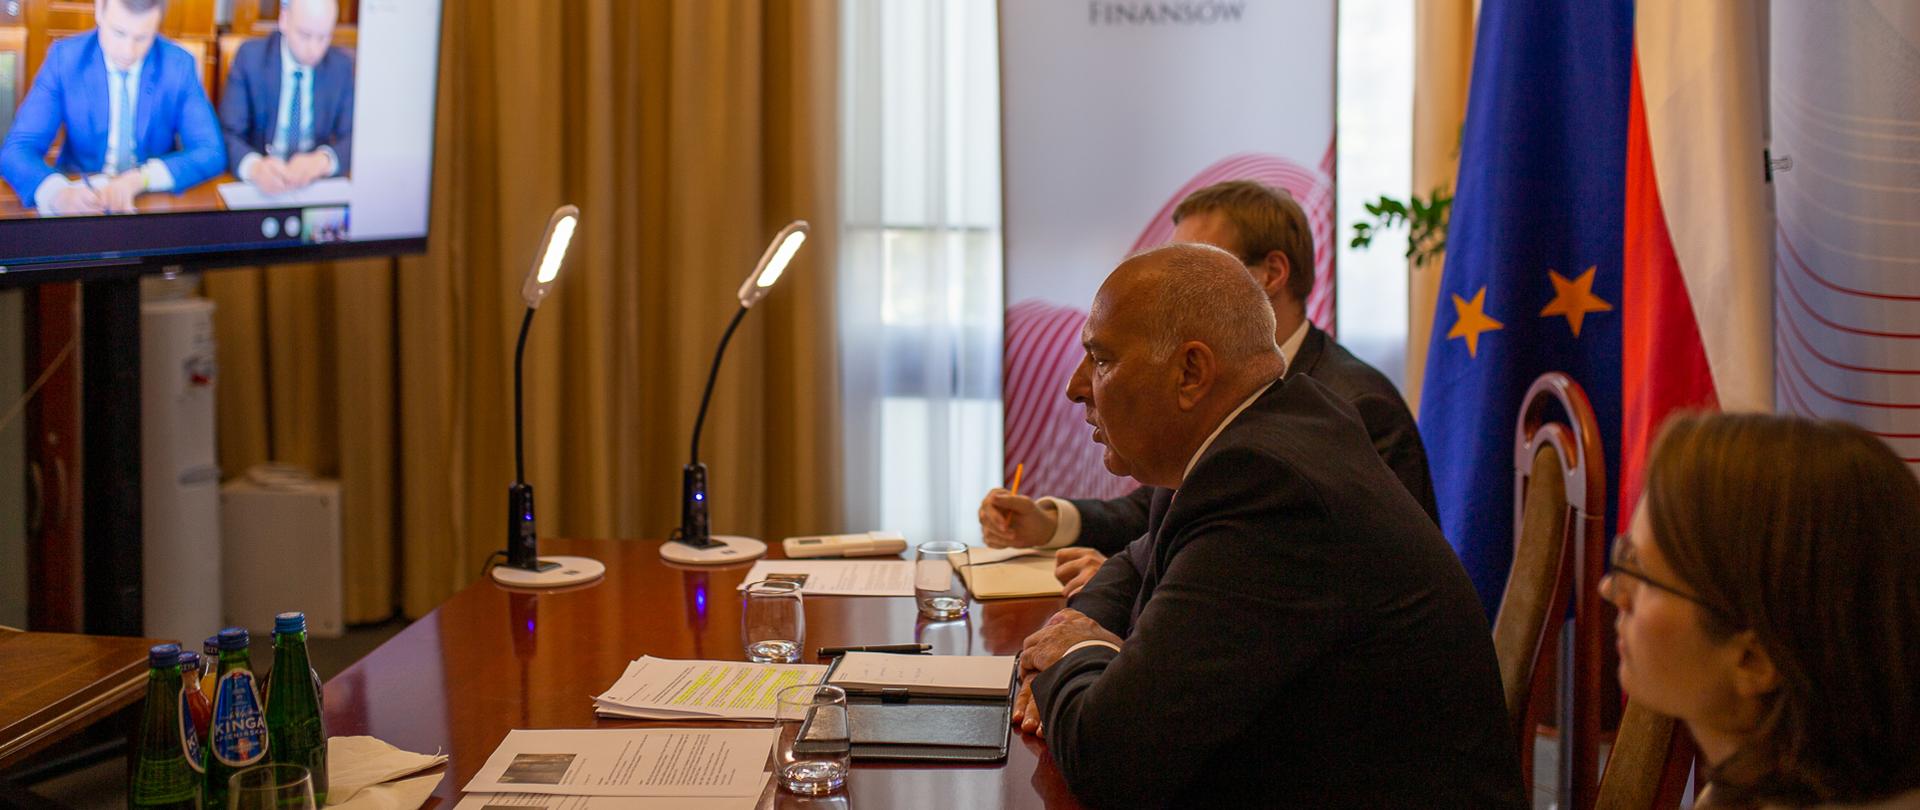 Minister Tadeusz Kościński, wiceminister Jan Sarnowski i szefowa KAS Magdalena Rzeczkowska podczas telekonferencji ze stroną ukraińską, siedzą przy stole, przed nimi telebim, w tle flagi Polski i UE